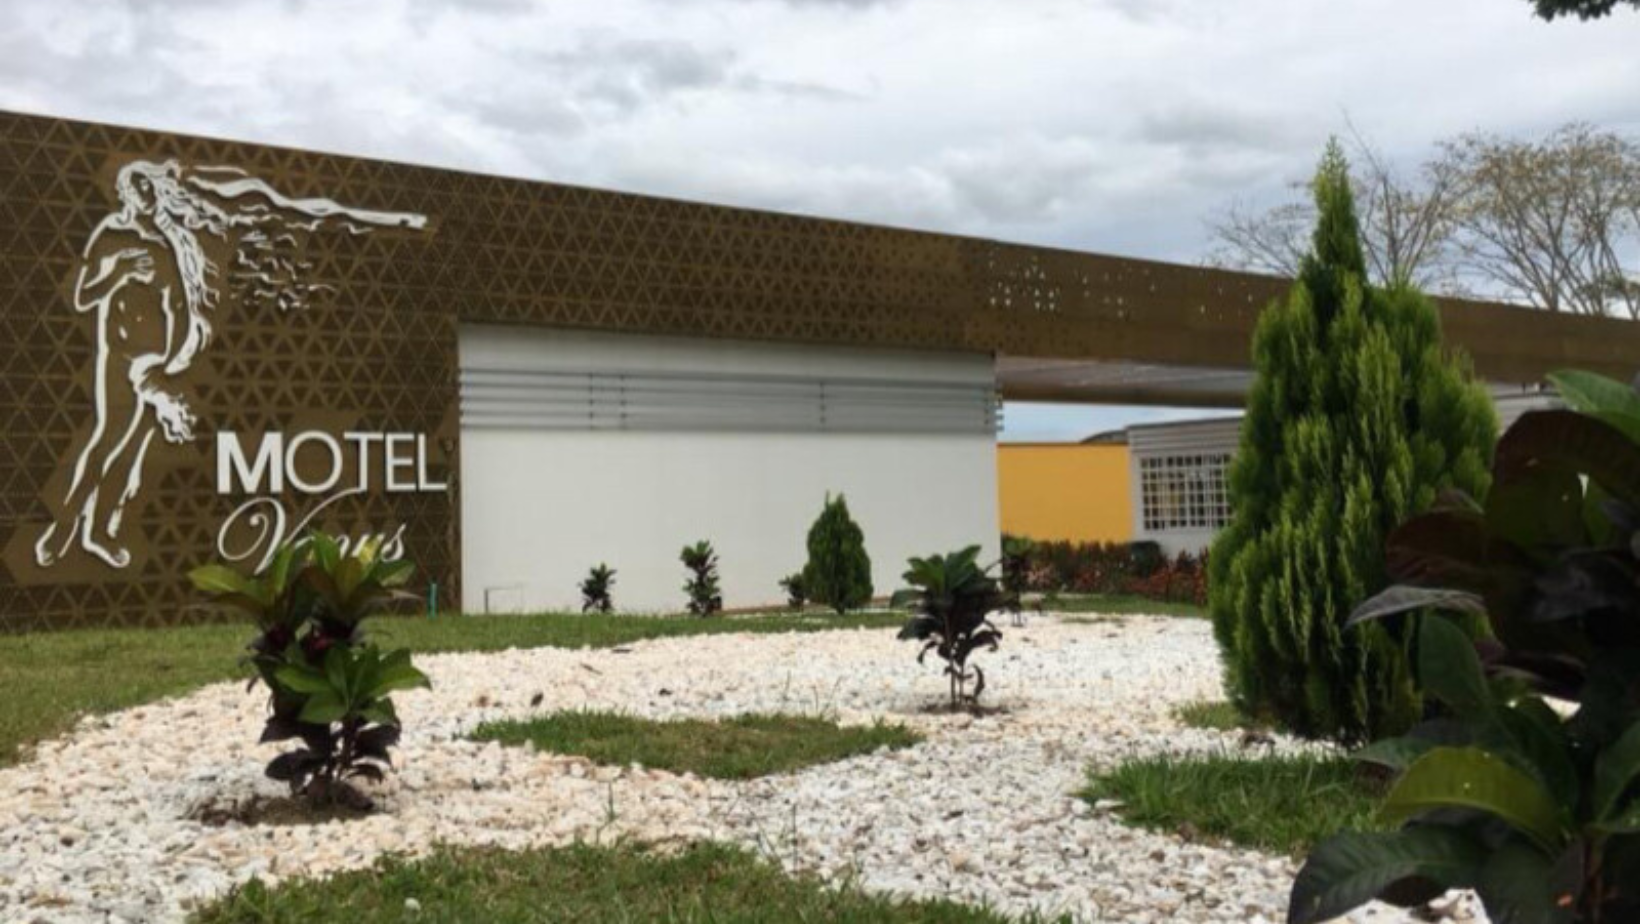 Clientes hirieron con arma traumática a un trabajador del Motel Venus en Ibagué